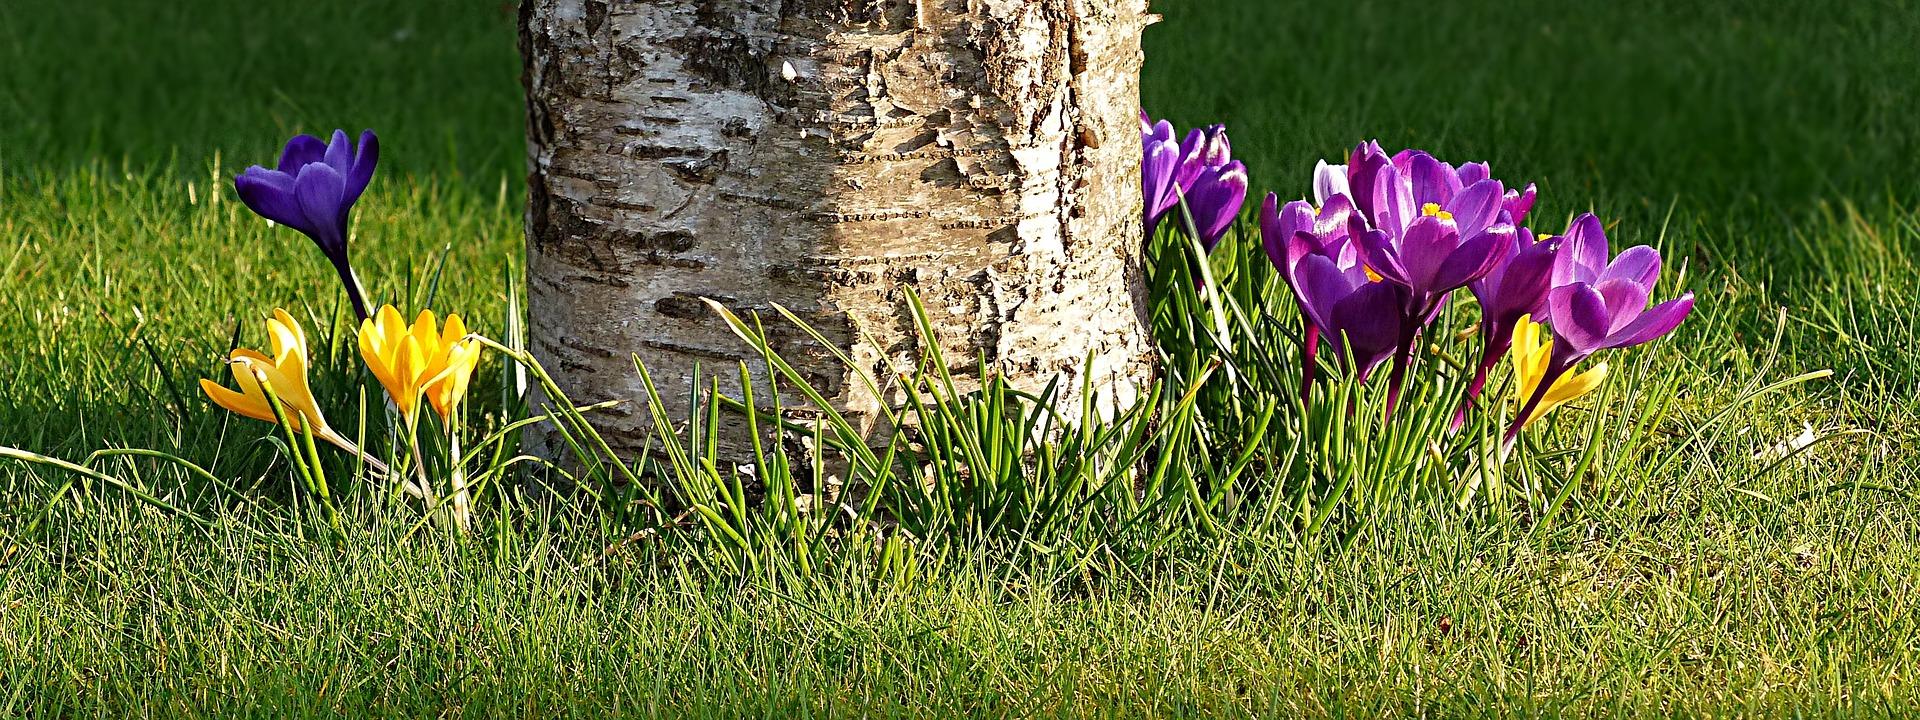 Täydessä vauhdissa kevät on, kun tutut krookukset täyttävät kukkapenkit iloisella väriloistollaan!